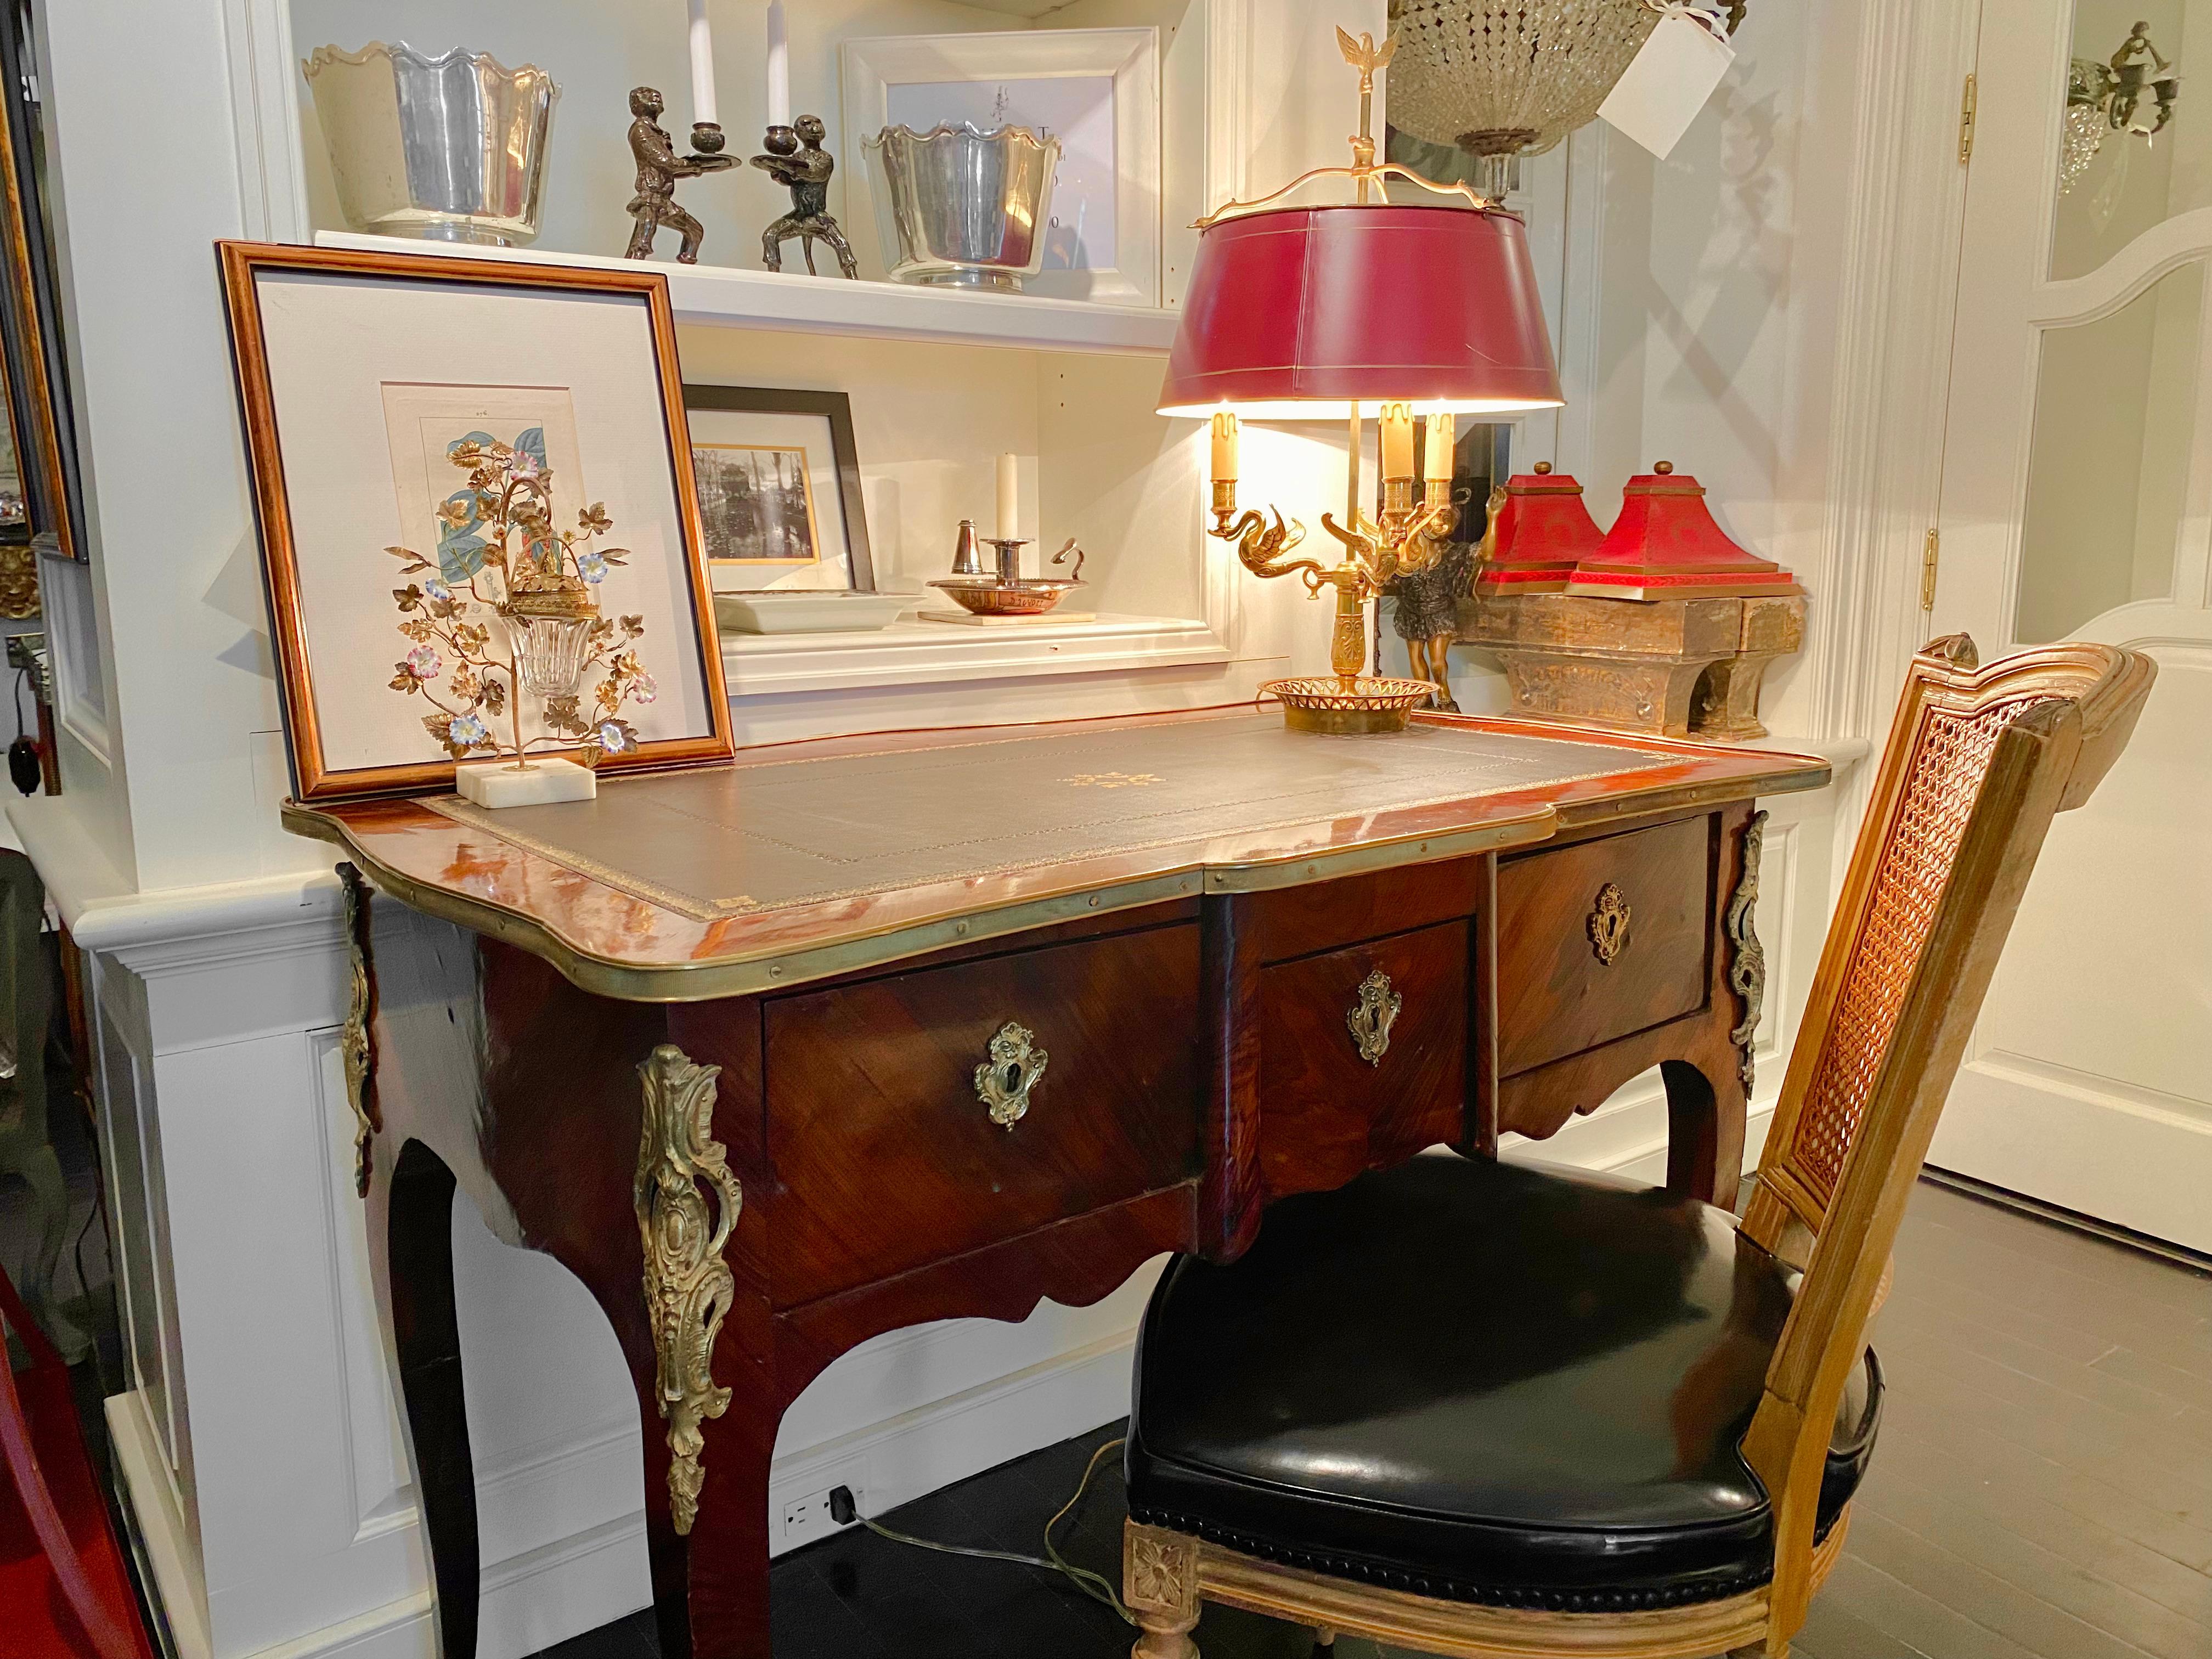 Ancien bureau plat de style Louis XV, en bois de rose et monture Ormulu, reposant sur des pieds cabriole. Dessus en cuir travaillé.

Dimensions : 43